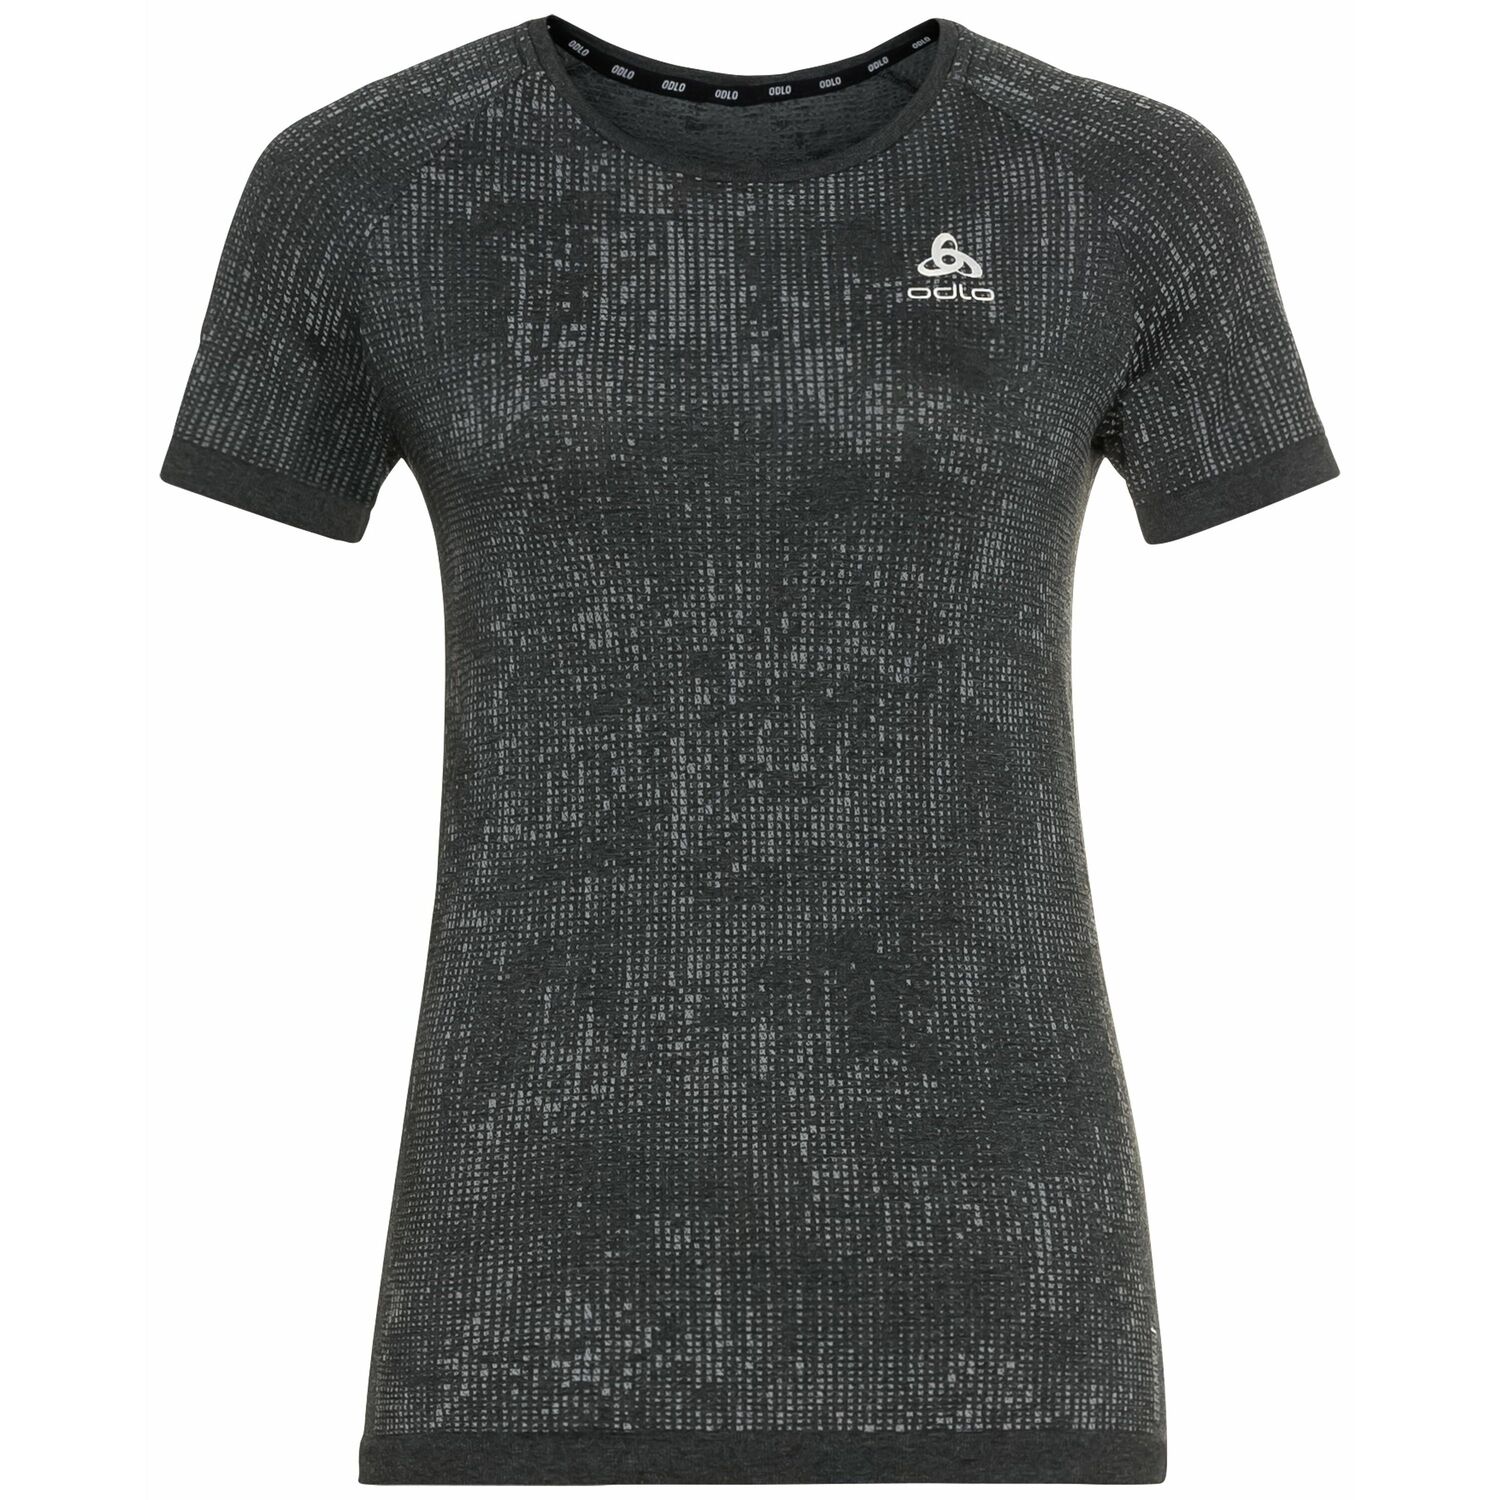 Odlo Blackcomb Pro - T-shirt - Women's